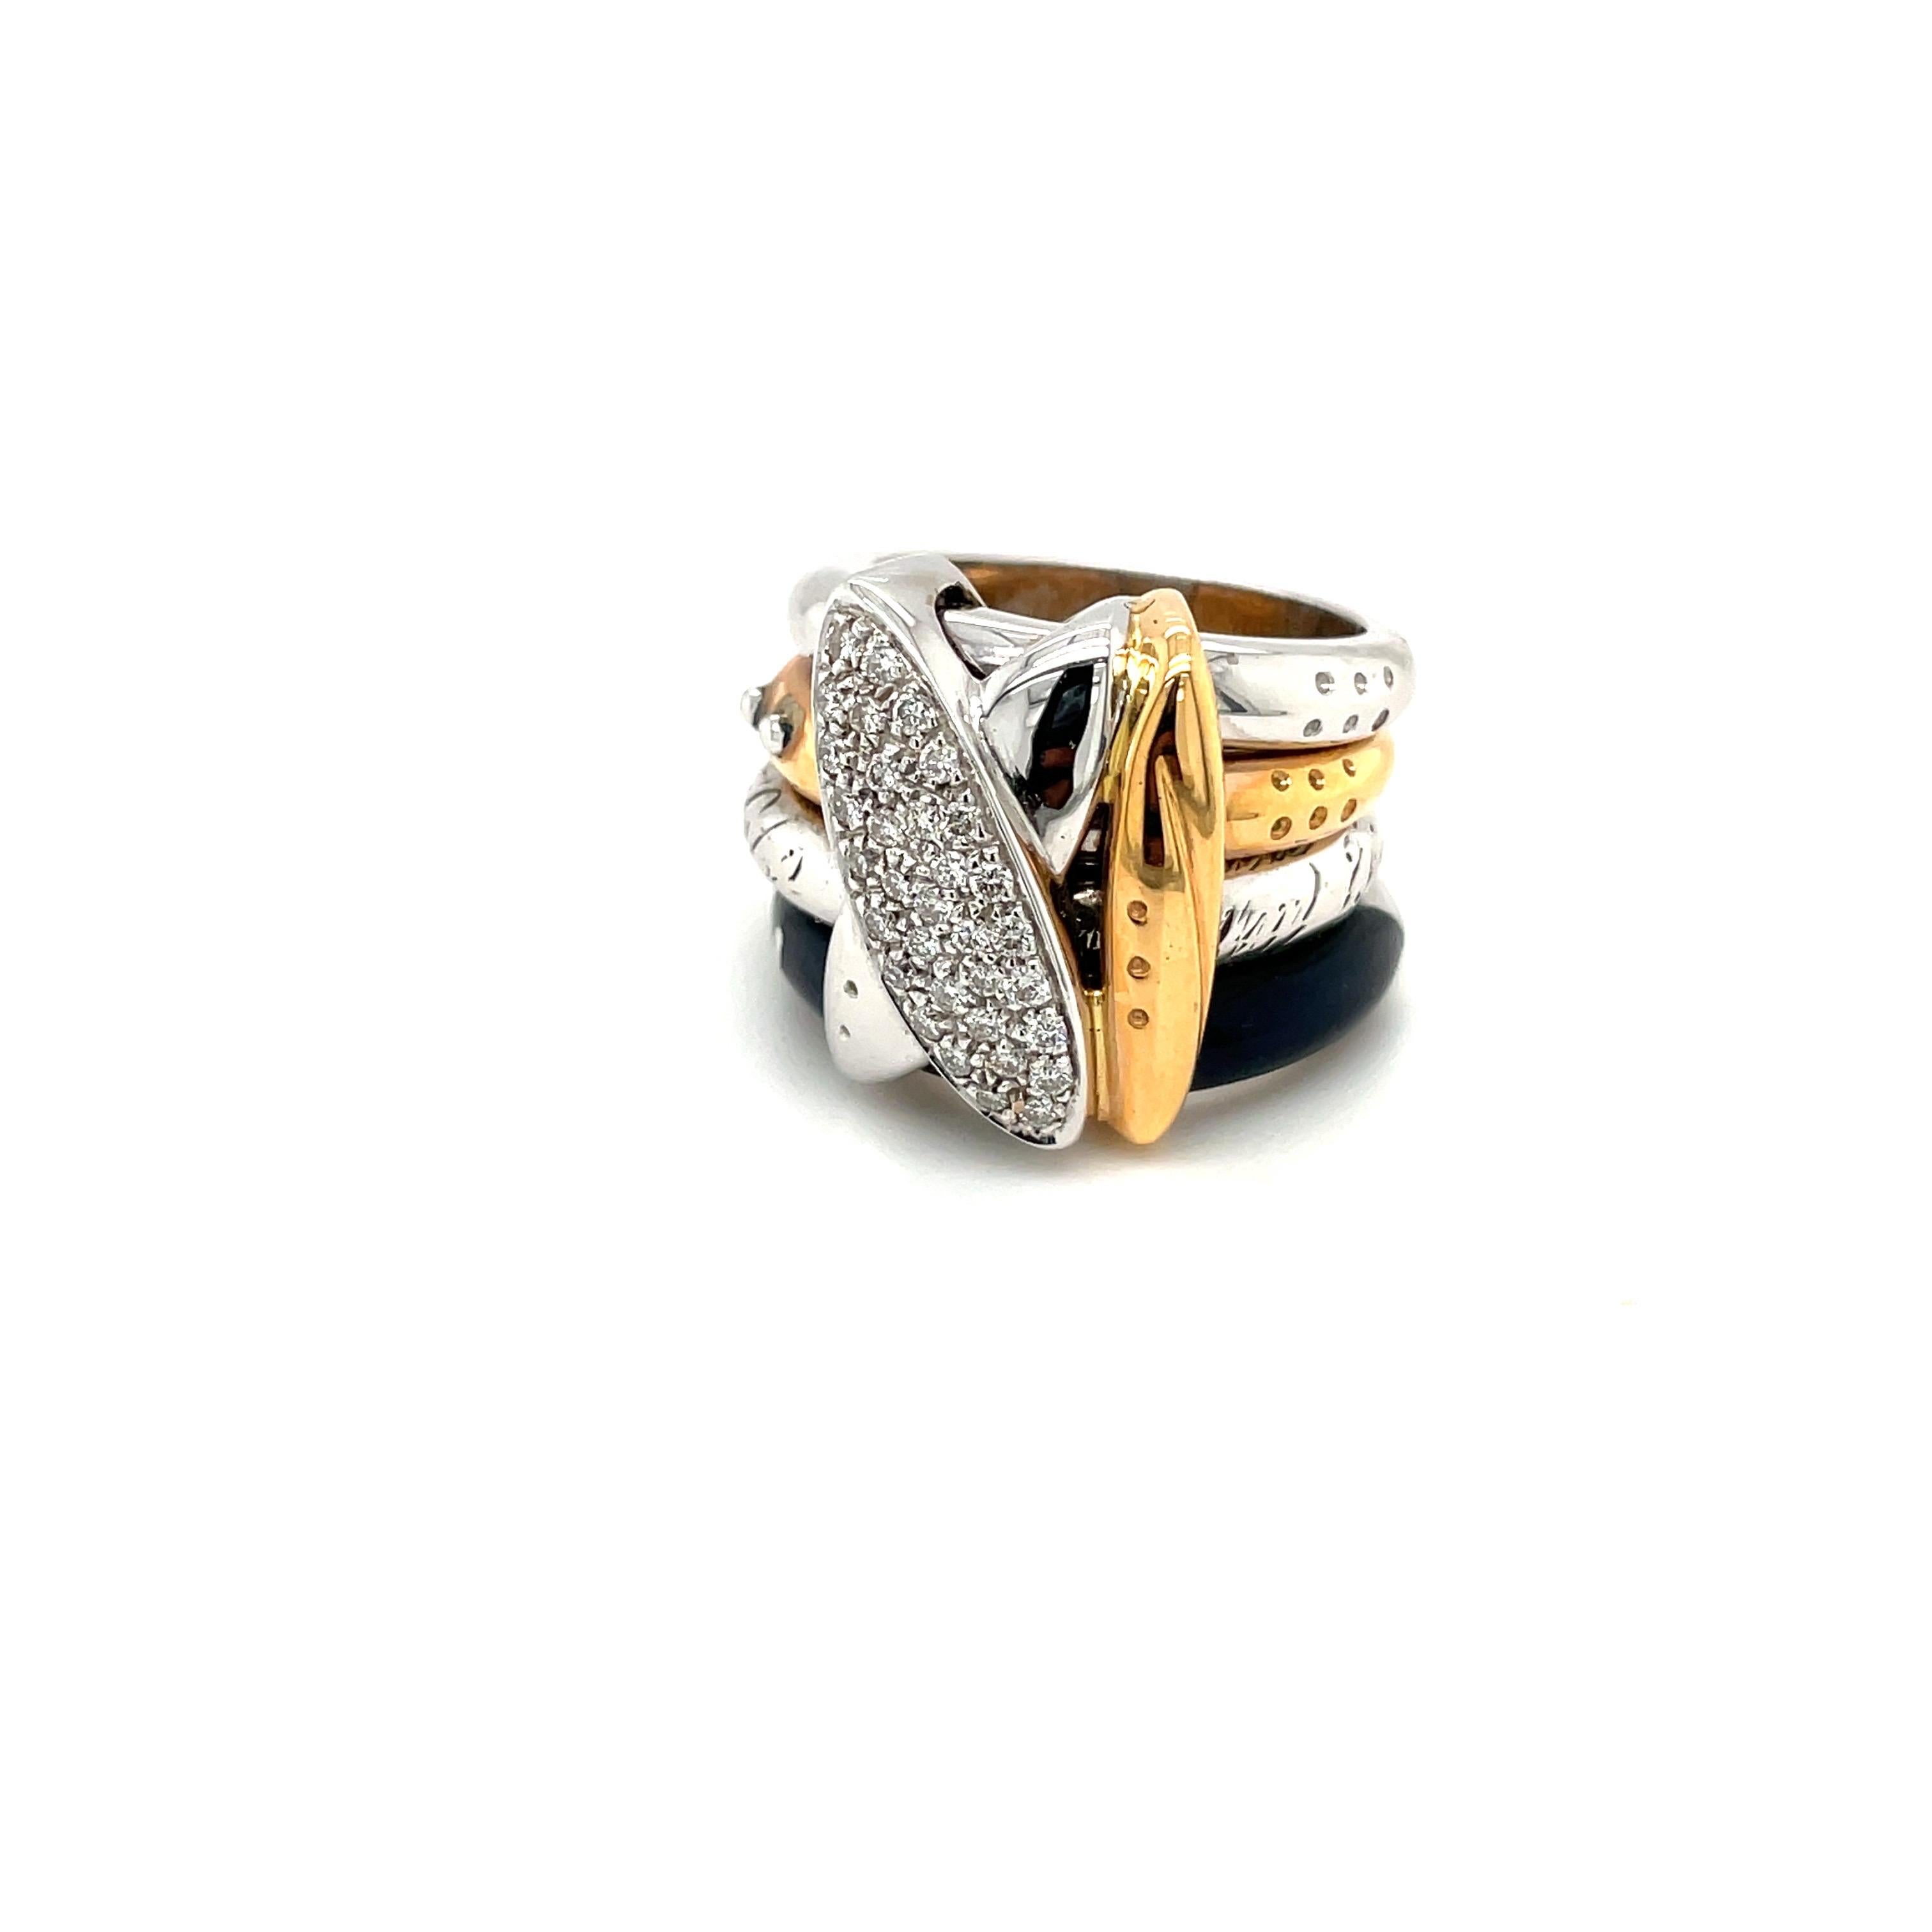 Cette bague en or 18 carats est conçue par la société italienne de renommée mondiale La Nouvelle Bague. Ils sont connus pour leur artisanat exquis, mariant le classique et le moderne.
L'anneau est composé de 4 bandes, 2 en or blanc, 1 en or rose et